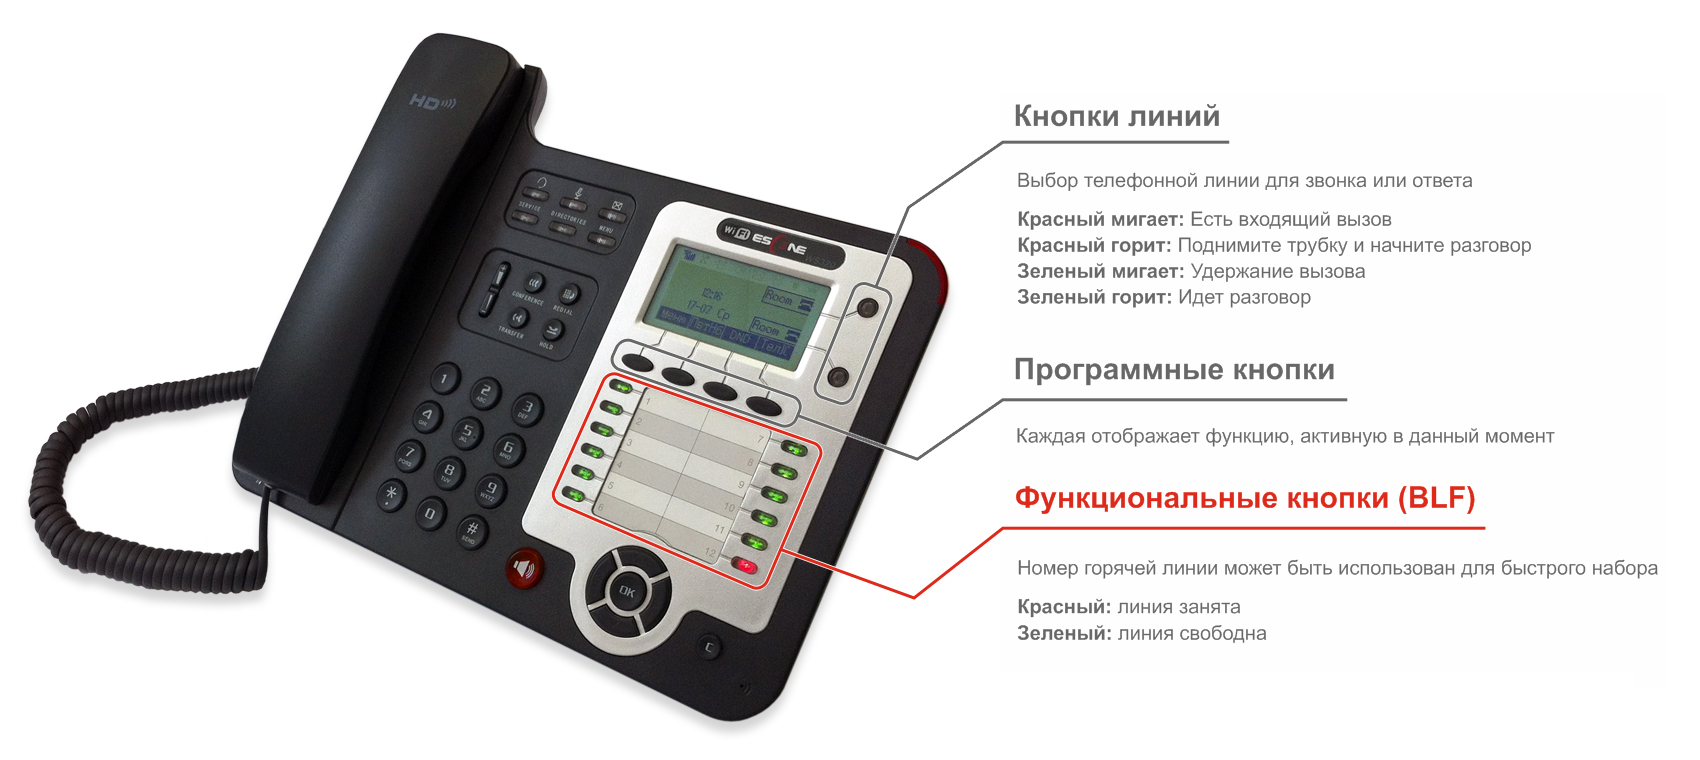 Функциональные кнопки (BLF) IP-телефона Escene WS320